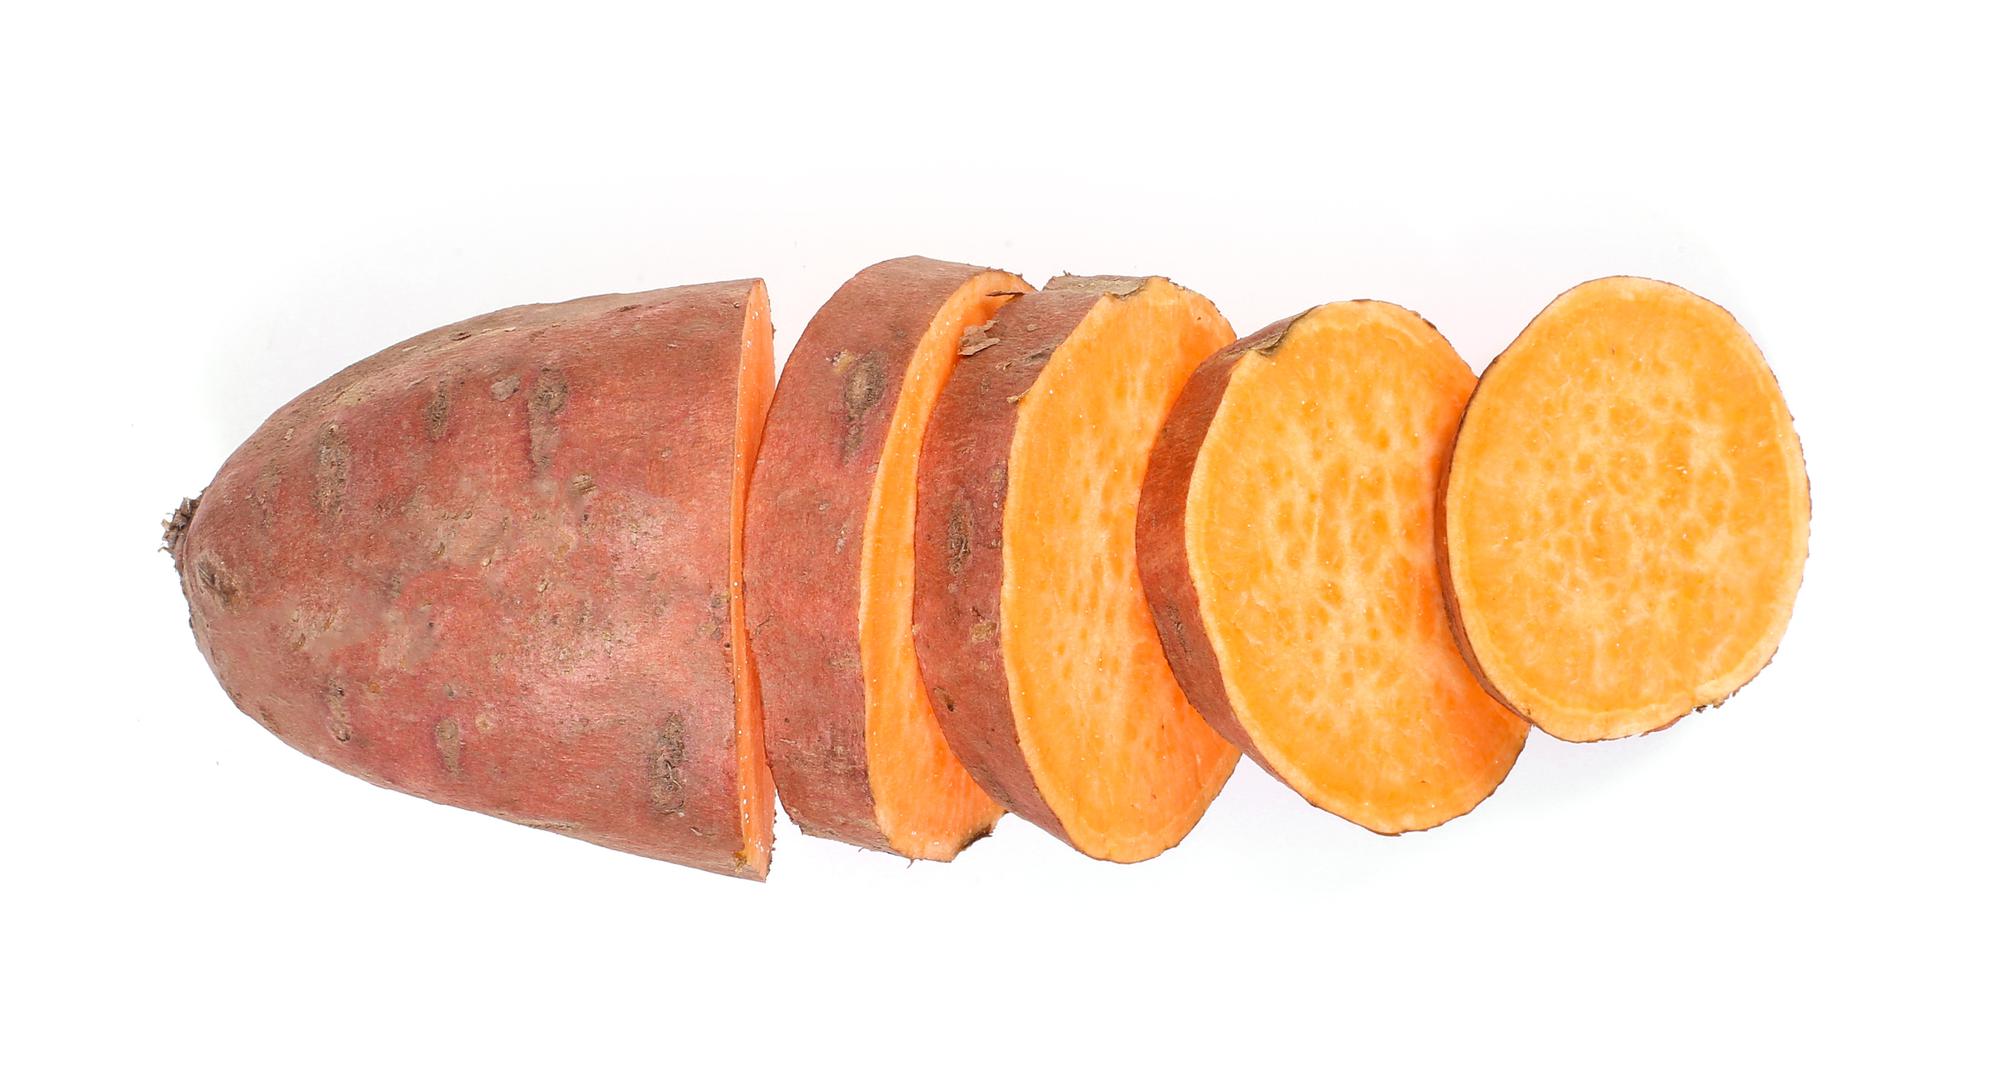 Batat ili slatki krumpir odličan je izvor beta- karotena, a u 114 grama ovog slatkog krumpira sadrži beta - karotena da pokrije četiri puta veću količinu dnevno potrebnog Vitamina A. 